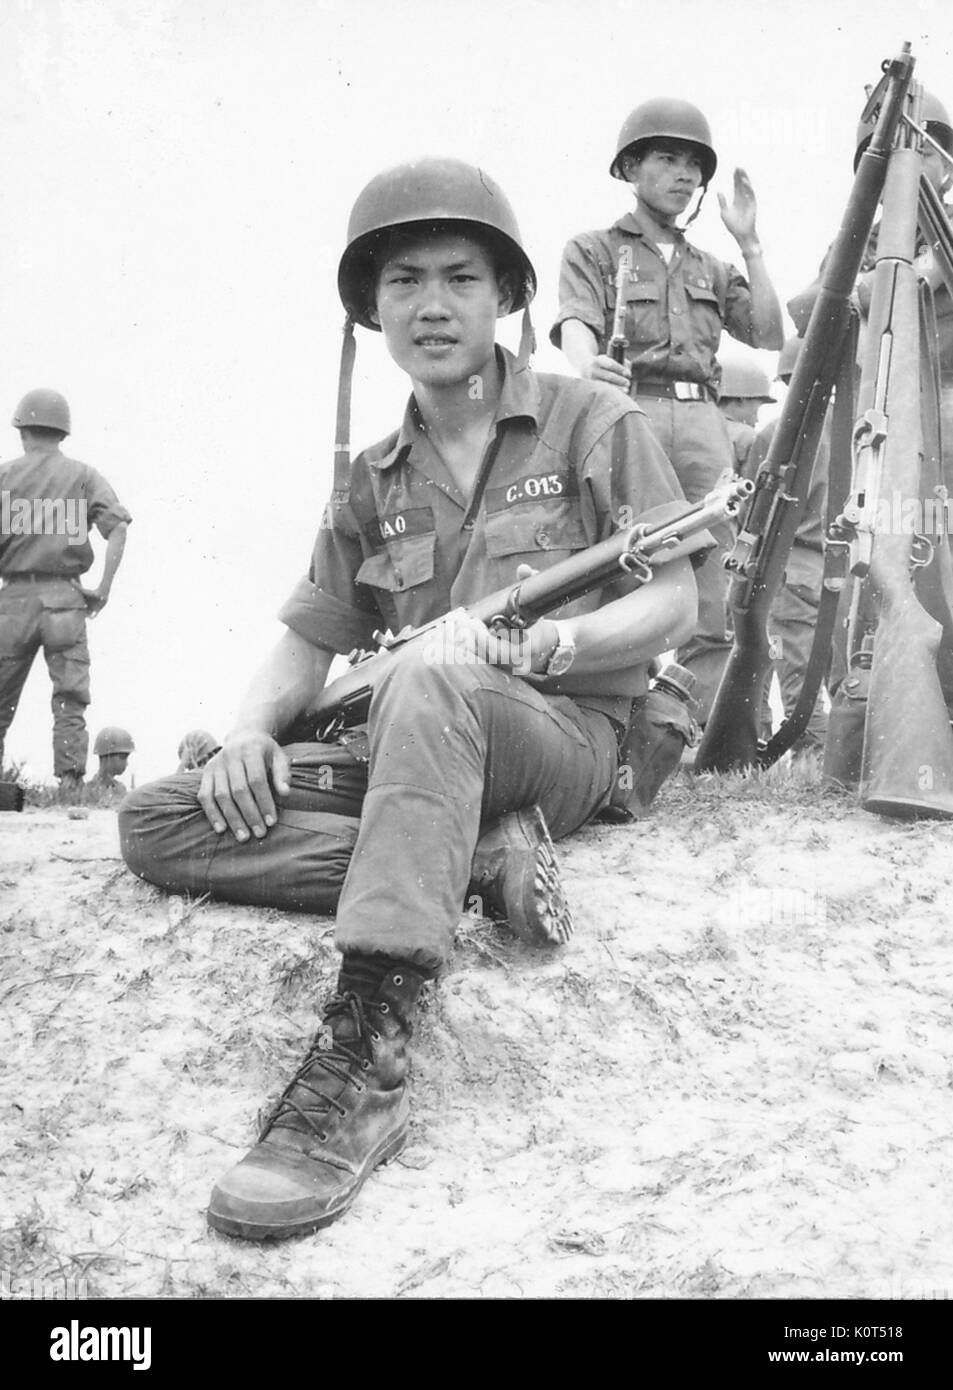 Ein Foto einer Armee der Republik Vietnam Soldaten seine Kampf Gewehr Holding, andere Soldaten im Hintergrund sichtbar sind sowie eine mehrere Waffen gemeinsam in eine aufrechte Position, Vietnam, 1968 lehnte. Stockfoto